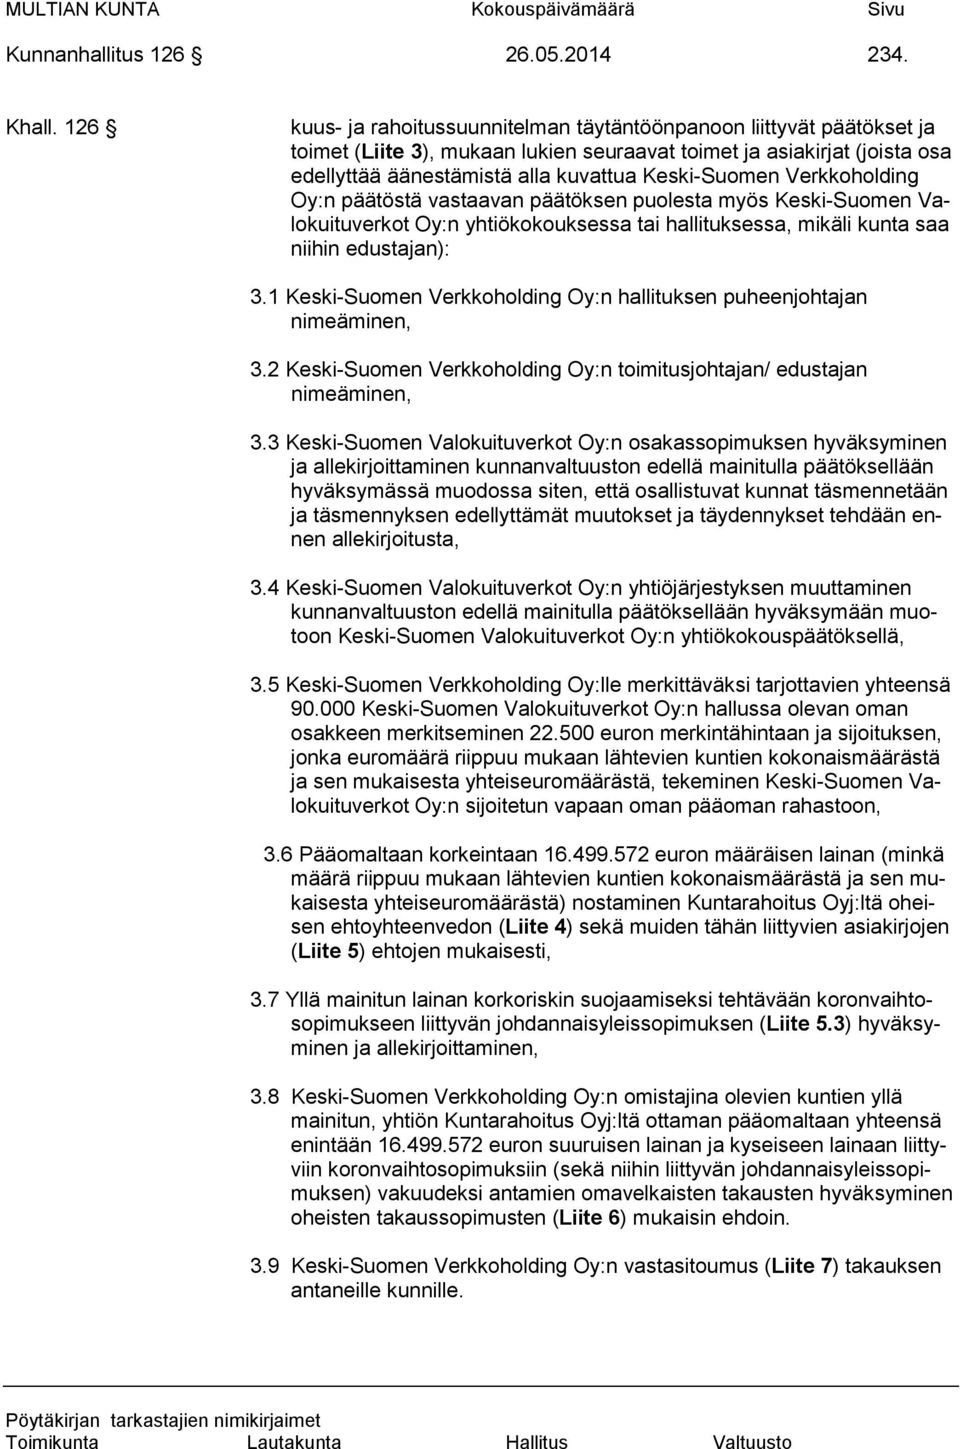 Verkkoholding Oy:n päätöstä vastaavan päätöksen puolesta myös Keski-Suomen Valokuituverkot Oy:n yhtiökokouksessa tai hallituksessa, mikäli kunta saa niihin edustajan): 3.